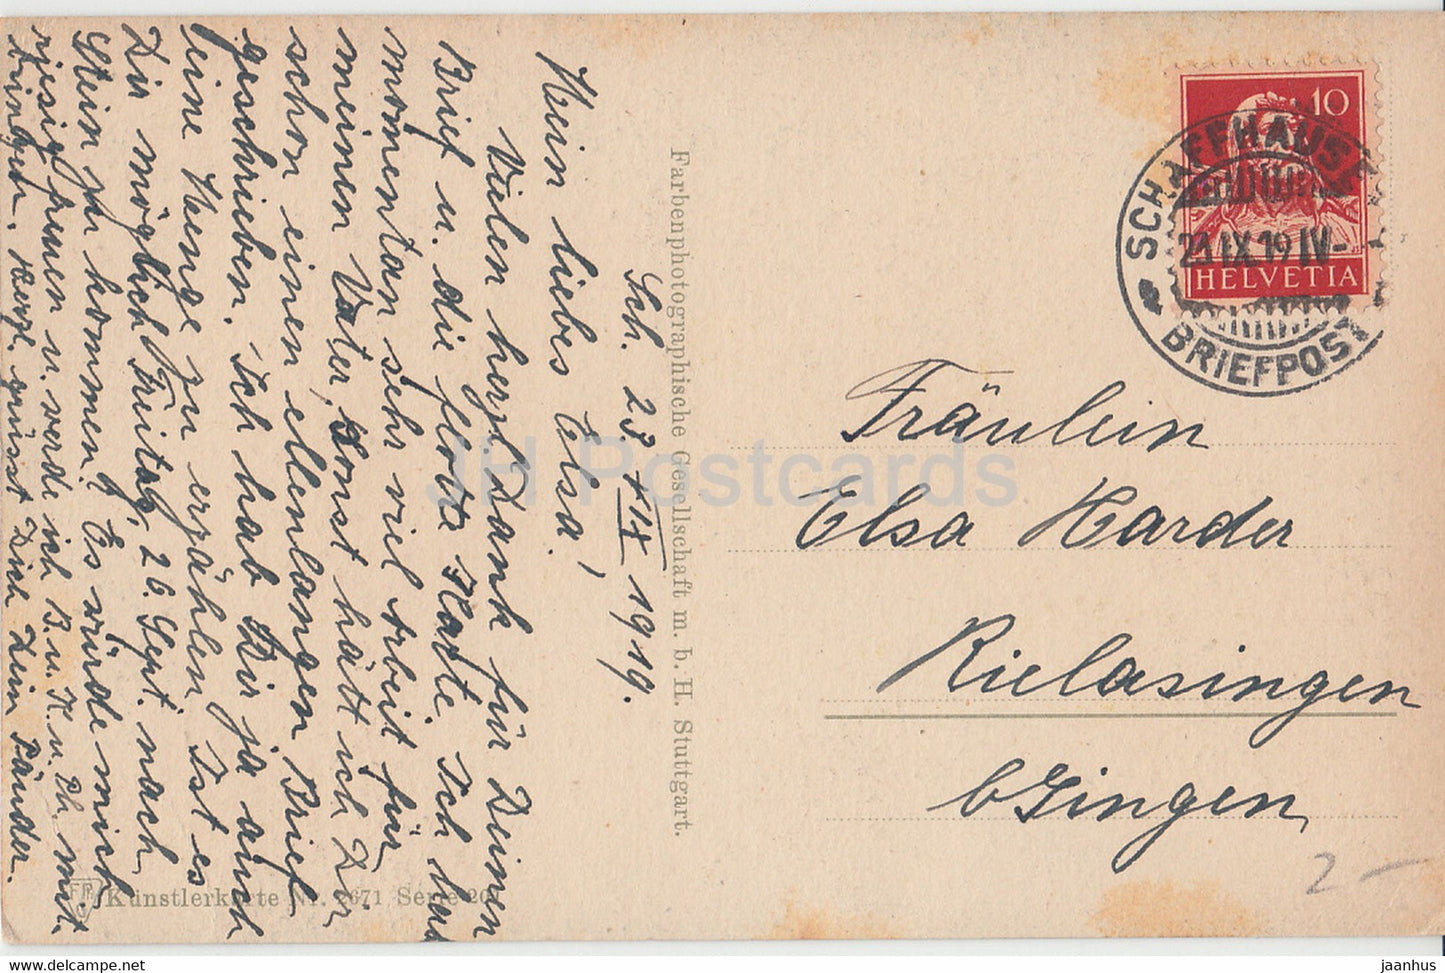 moulin à eau - route - Kunstlerkarte - 2671 - Serie 201 - FPG - carte postale ancienne - 1919 - Allemagne - utilisé